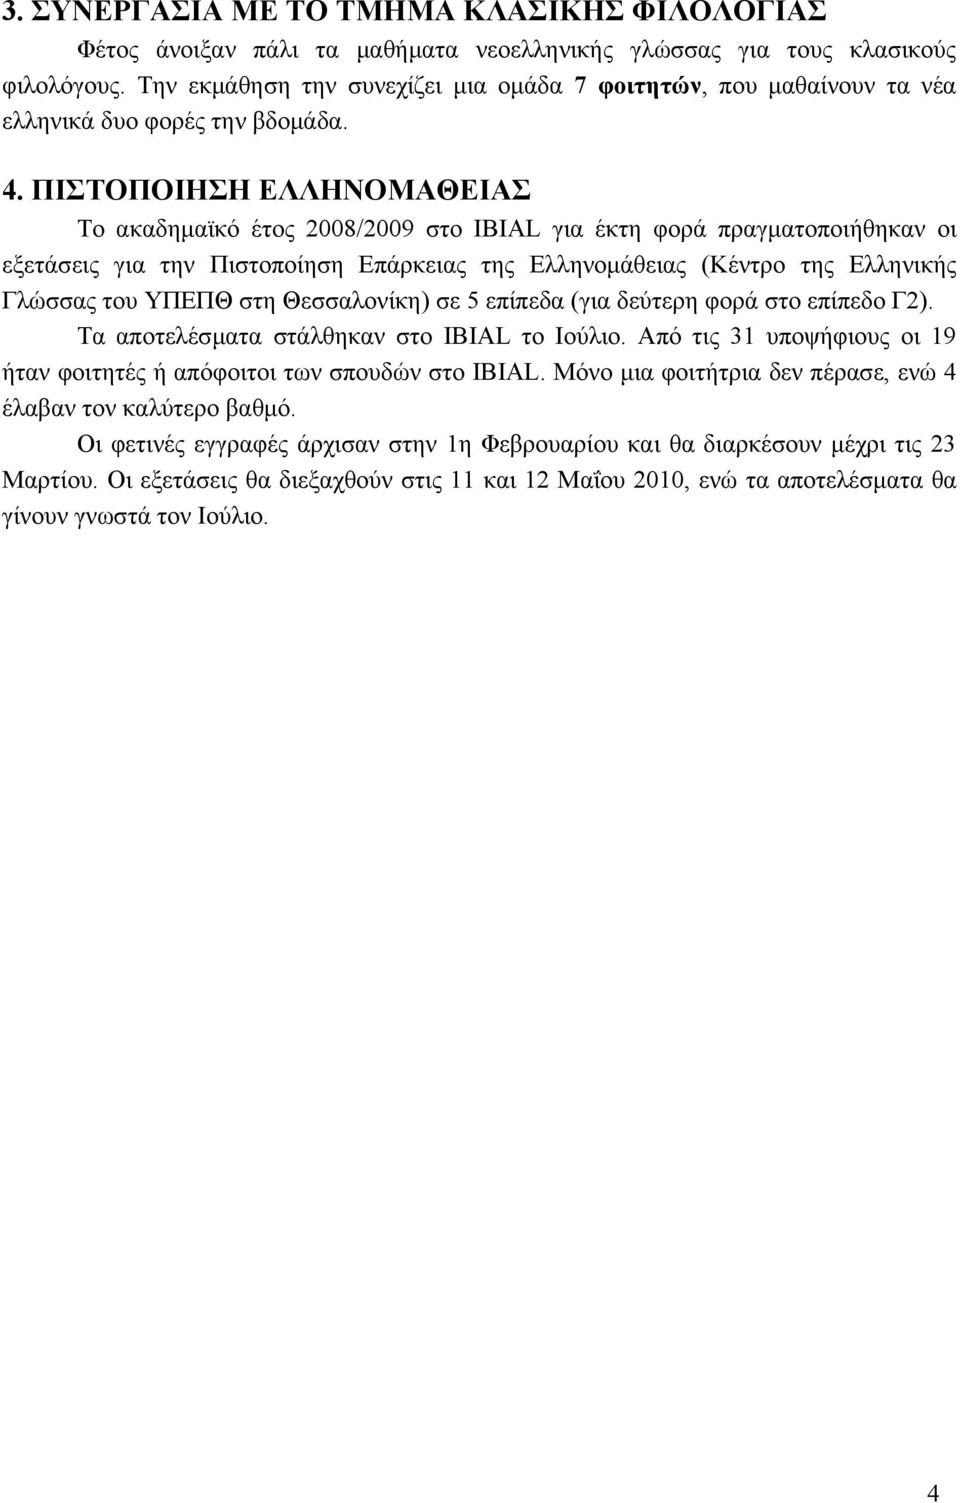 ΠΙΣΤΟΠΟΙΗΣΗ ΕΛΛΗΝΟΜΑΘΕΙΑΣ Το ακαδημαϊκό έτος 2008/2009 στο IBIAL για έκτη φορά πραγματοποιήθηκαν οι εξετάσεις για την Πιστοποίηση Επάρκειας της Ελληνομάθειας (Κέντρο της Ελληνικής Γλώσσας του ΥΠΕΠΘ